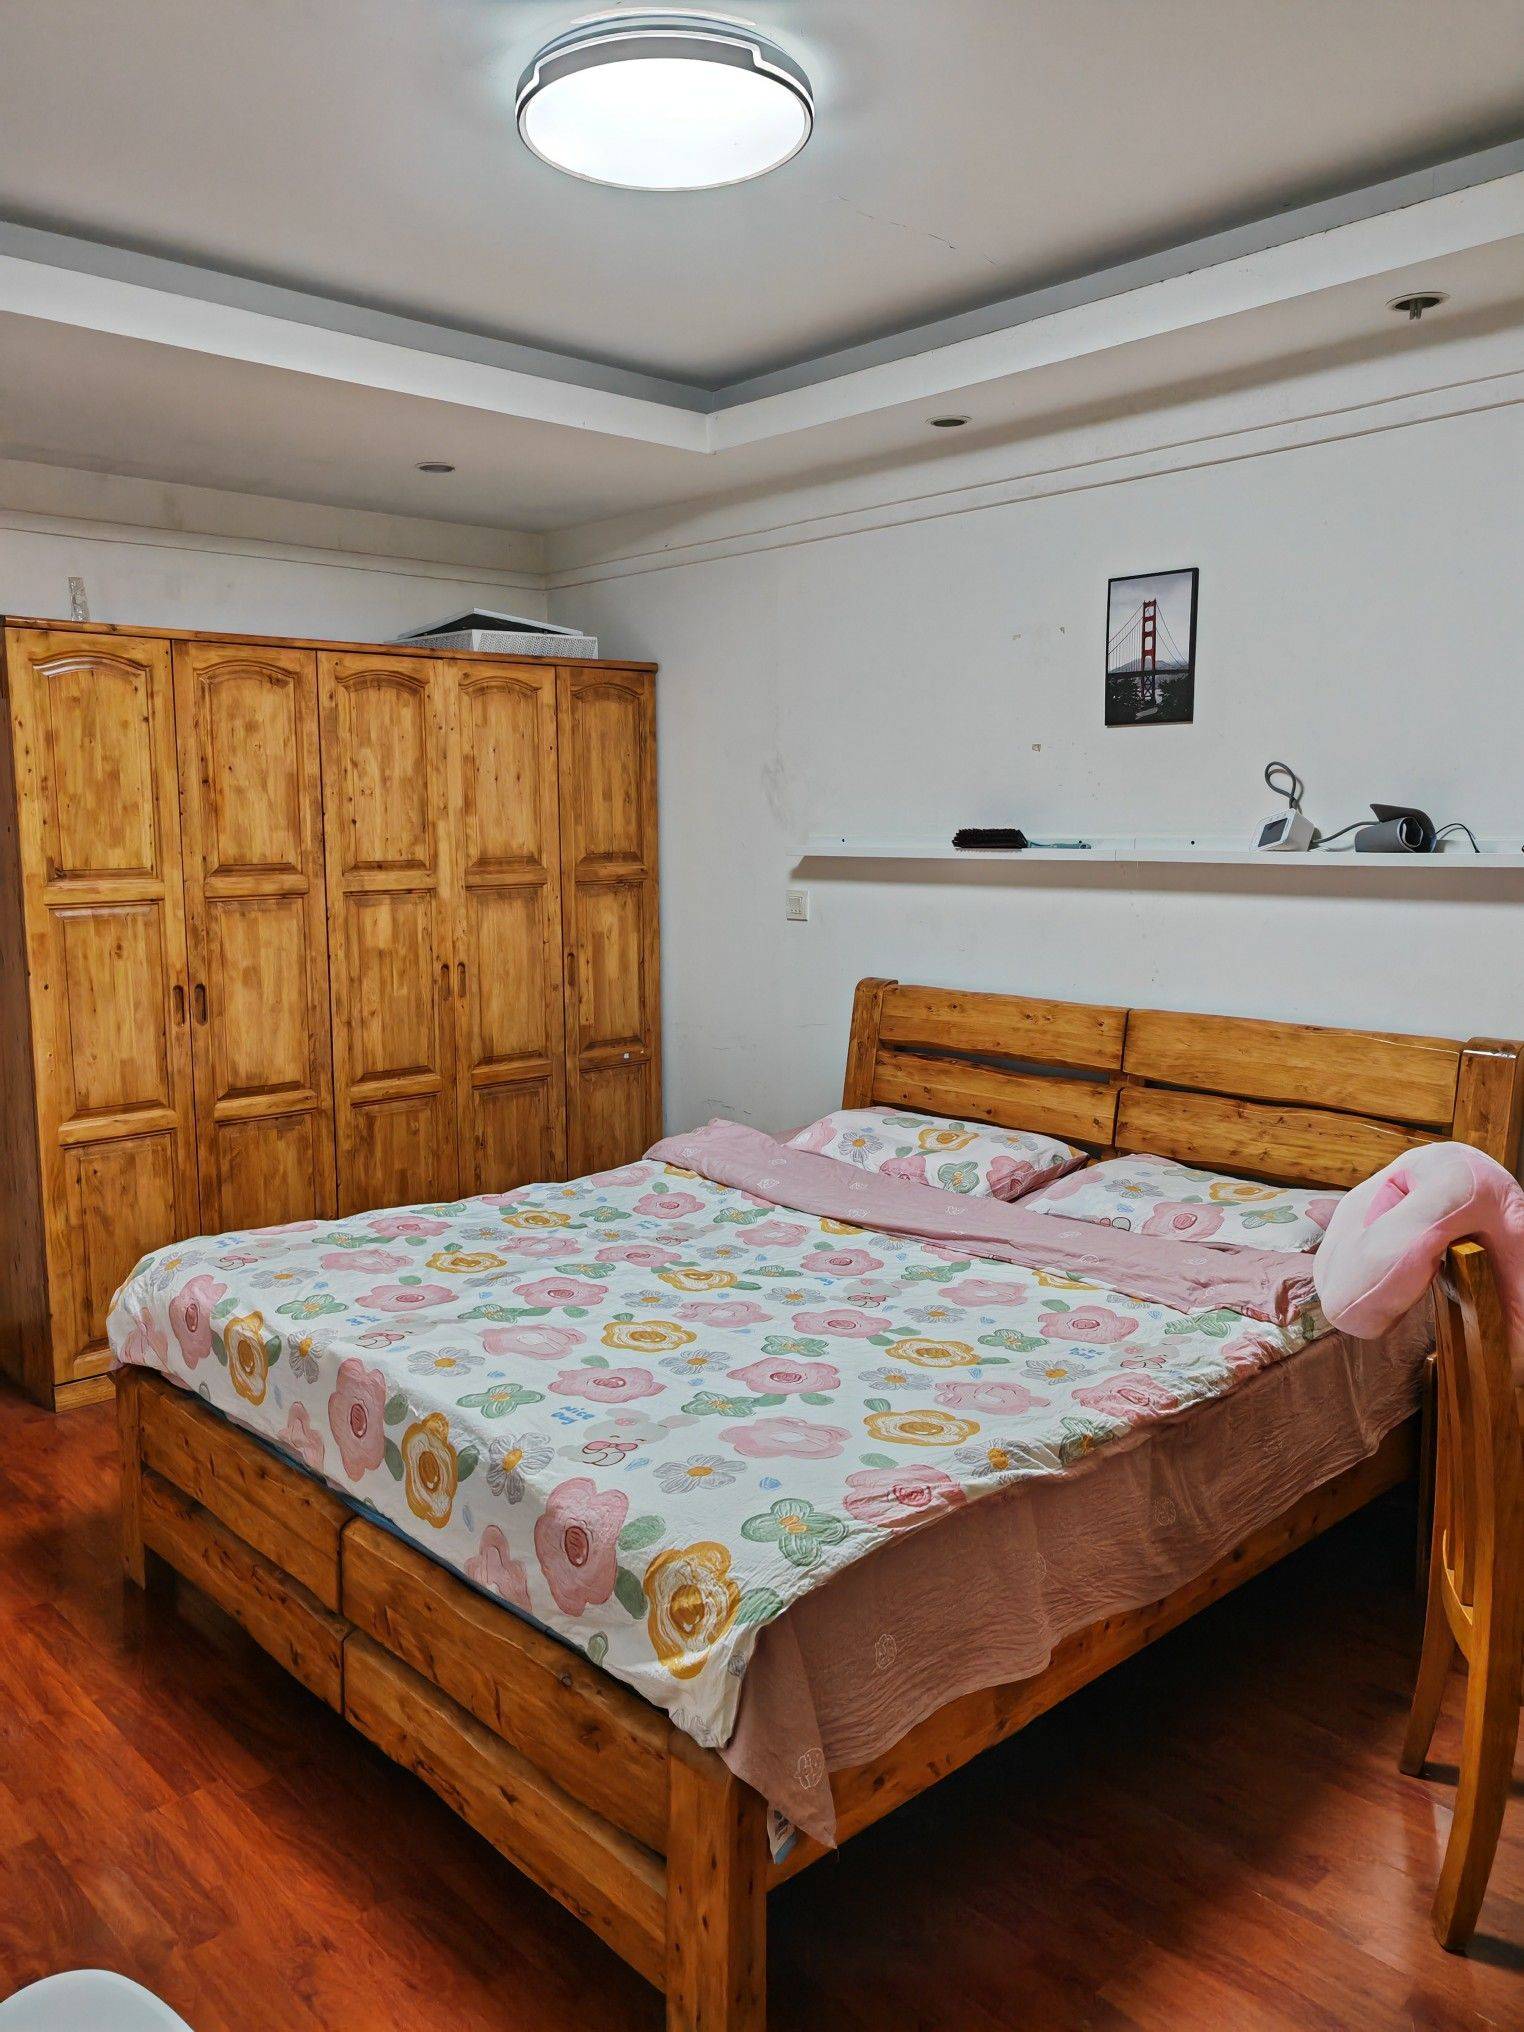 Chengdu-Wuhou-Cozy Home,Clean&Comfy,No Gender Limit,LGBTQ Friendly